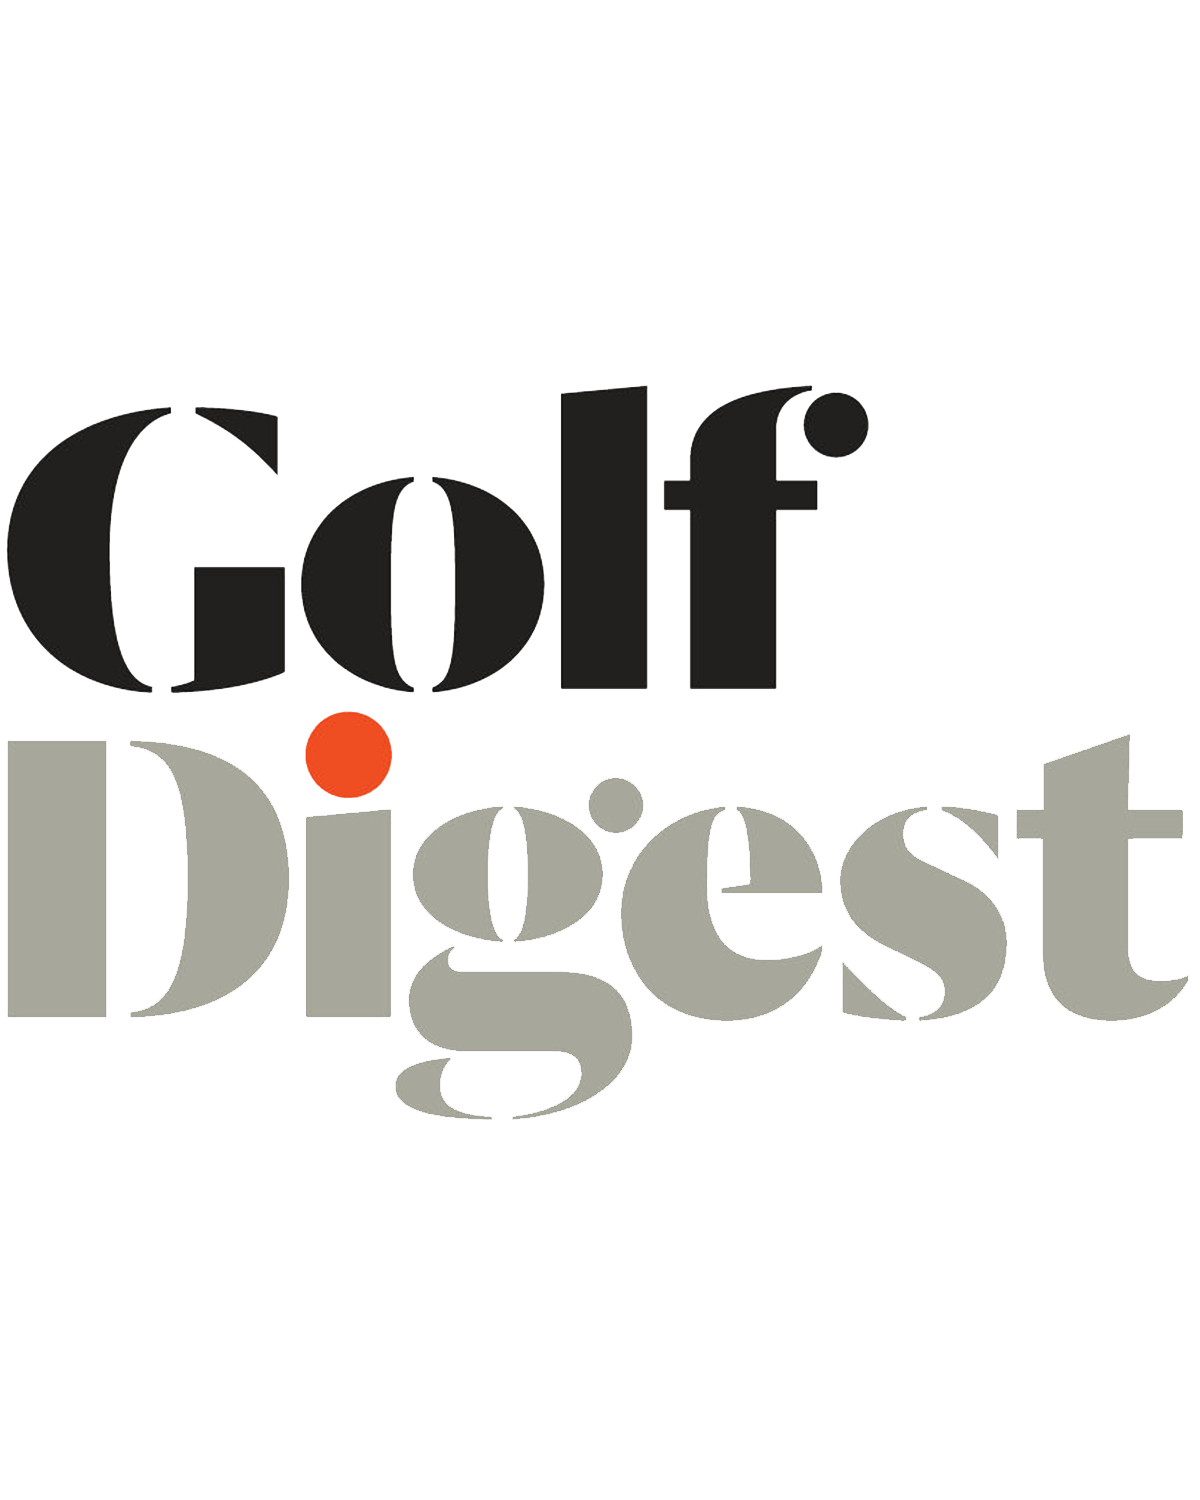 Golf Digest Logo - Golf digest Logos